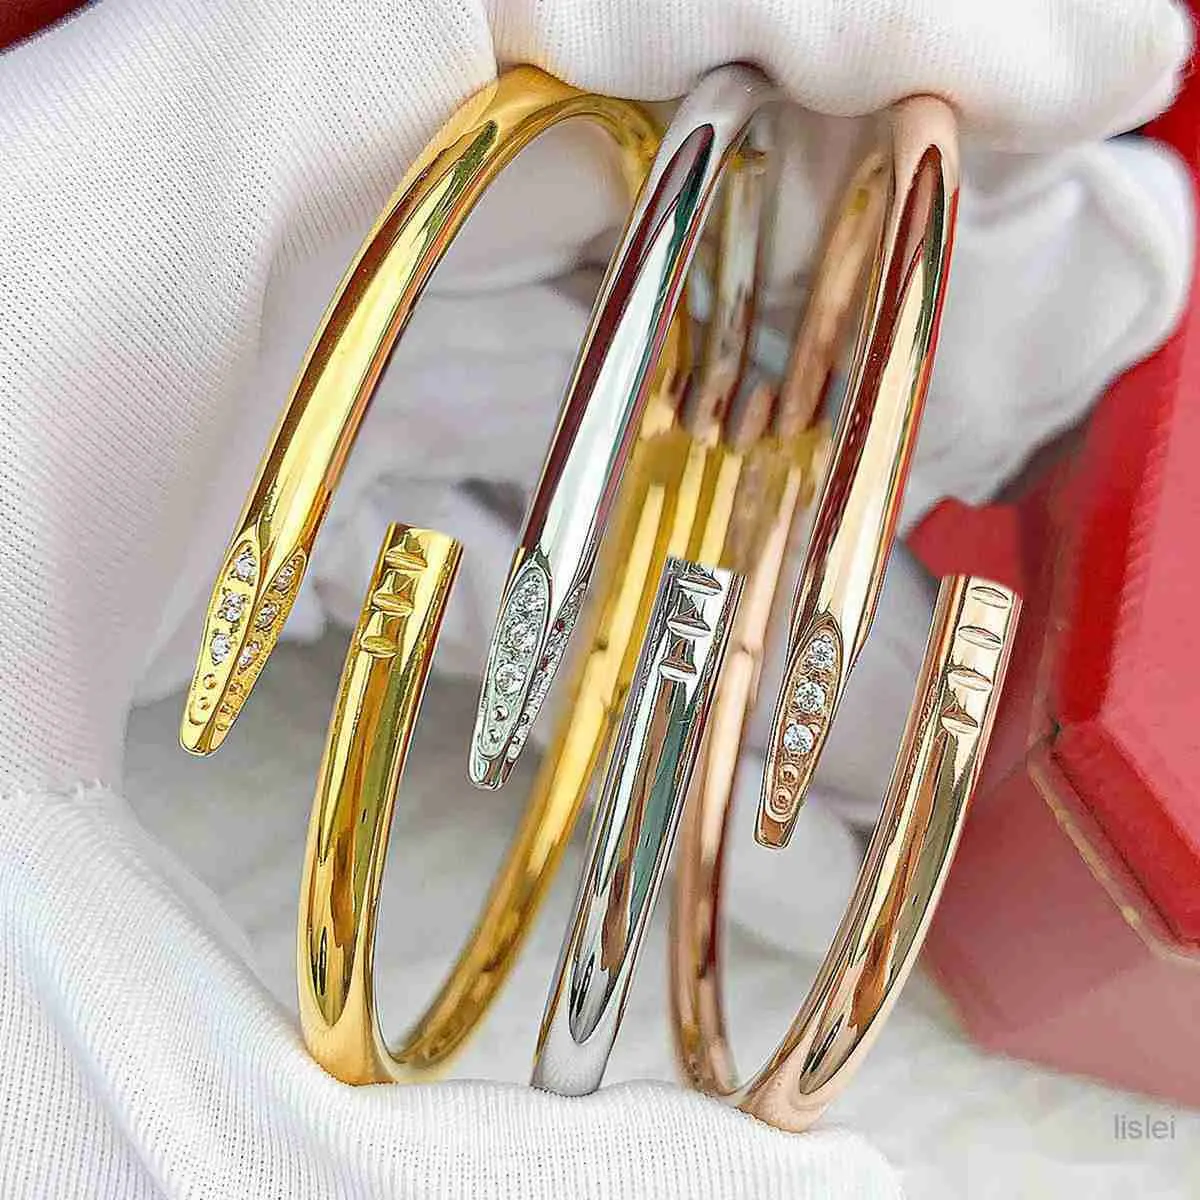 Paznokcie bransoletki dla kobiety mężczyzna projektant bransoletki projektant bransoletki projektanta biżuteria Projektant biżuterii Złota Boletka dla kobiet projektantki bransoletki dla kobiet Bieczek